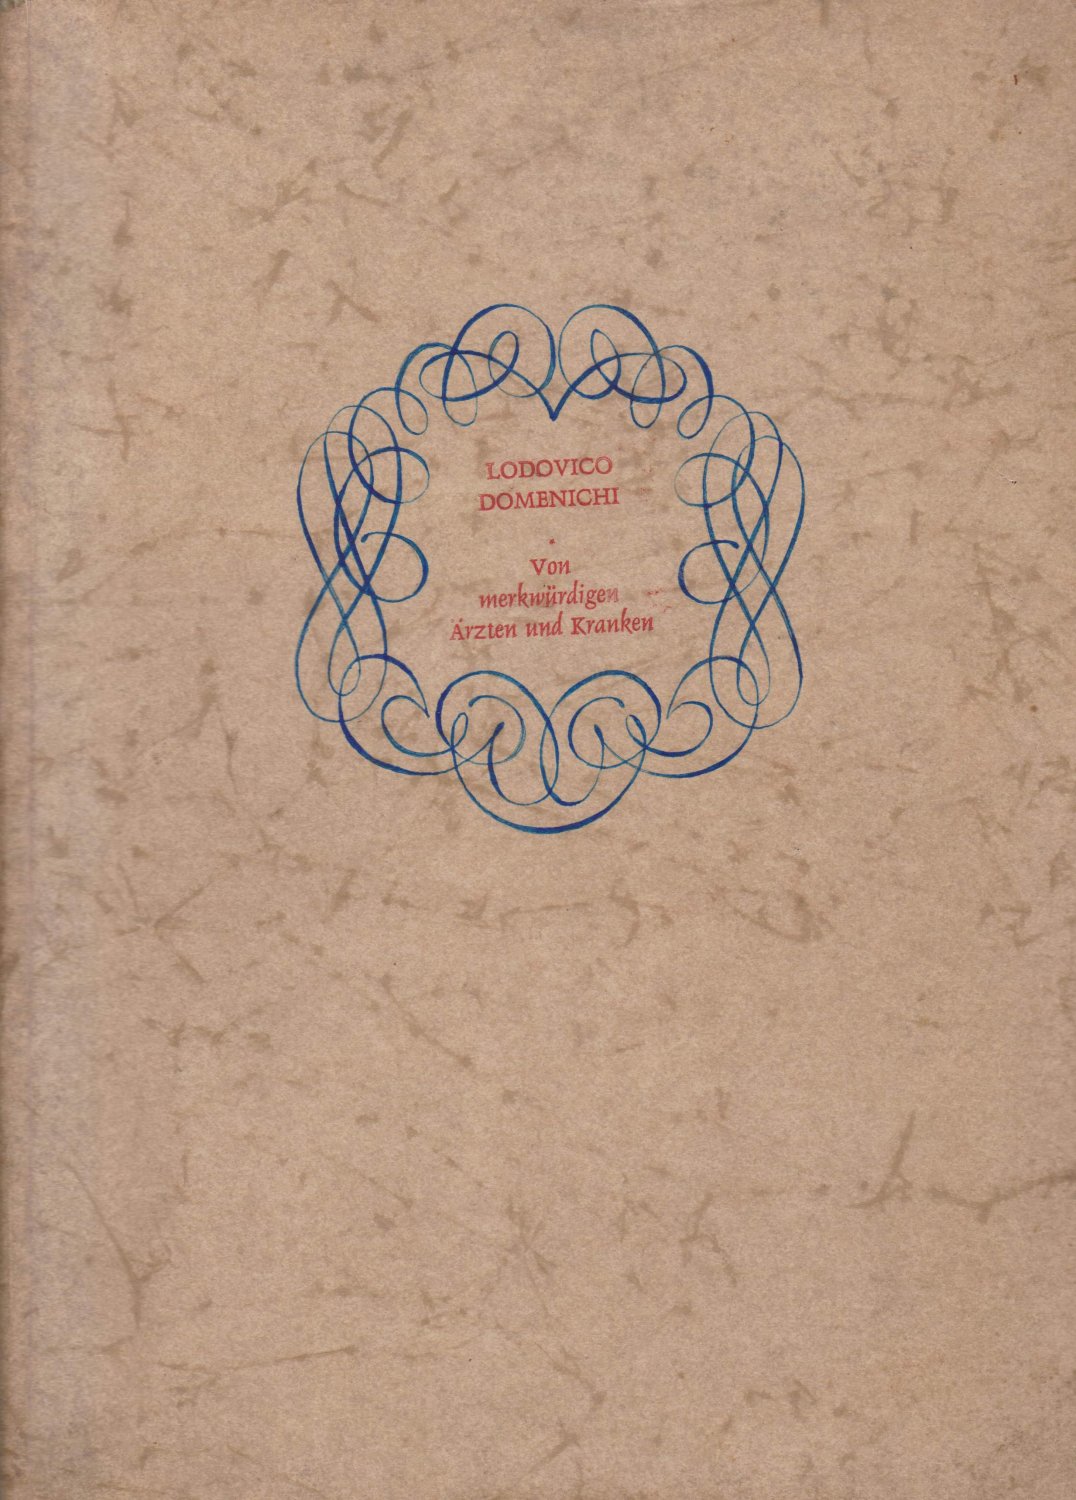 DOMENICHI, Lodovico / Rudolf ZECH (Gestaltung):  Von merkwürdigen Ärzten und Kranken. Übersetzt von Dr. Werner König nach der Erstausgabe "Firenze Anno 1548". 